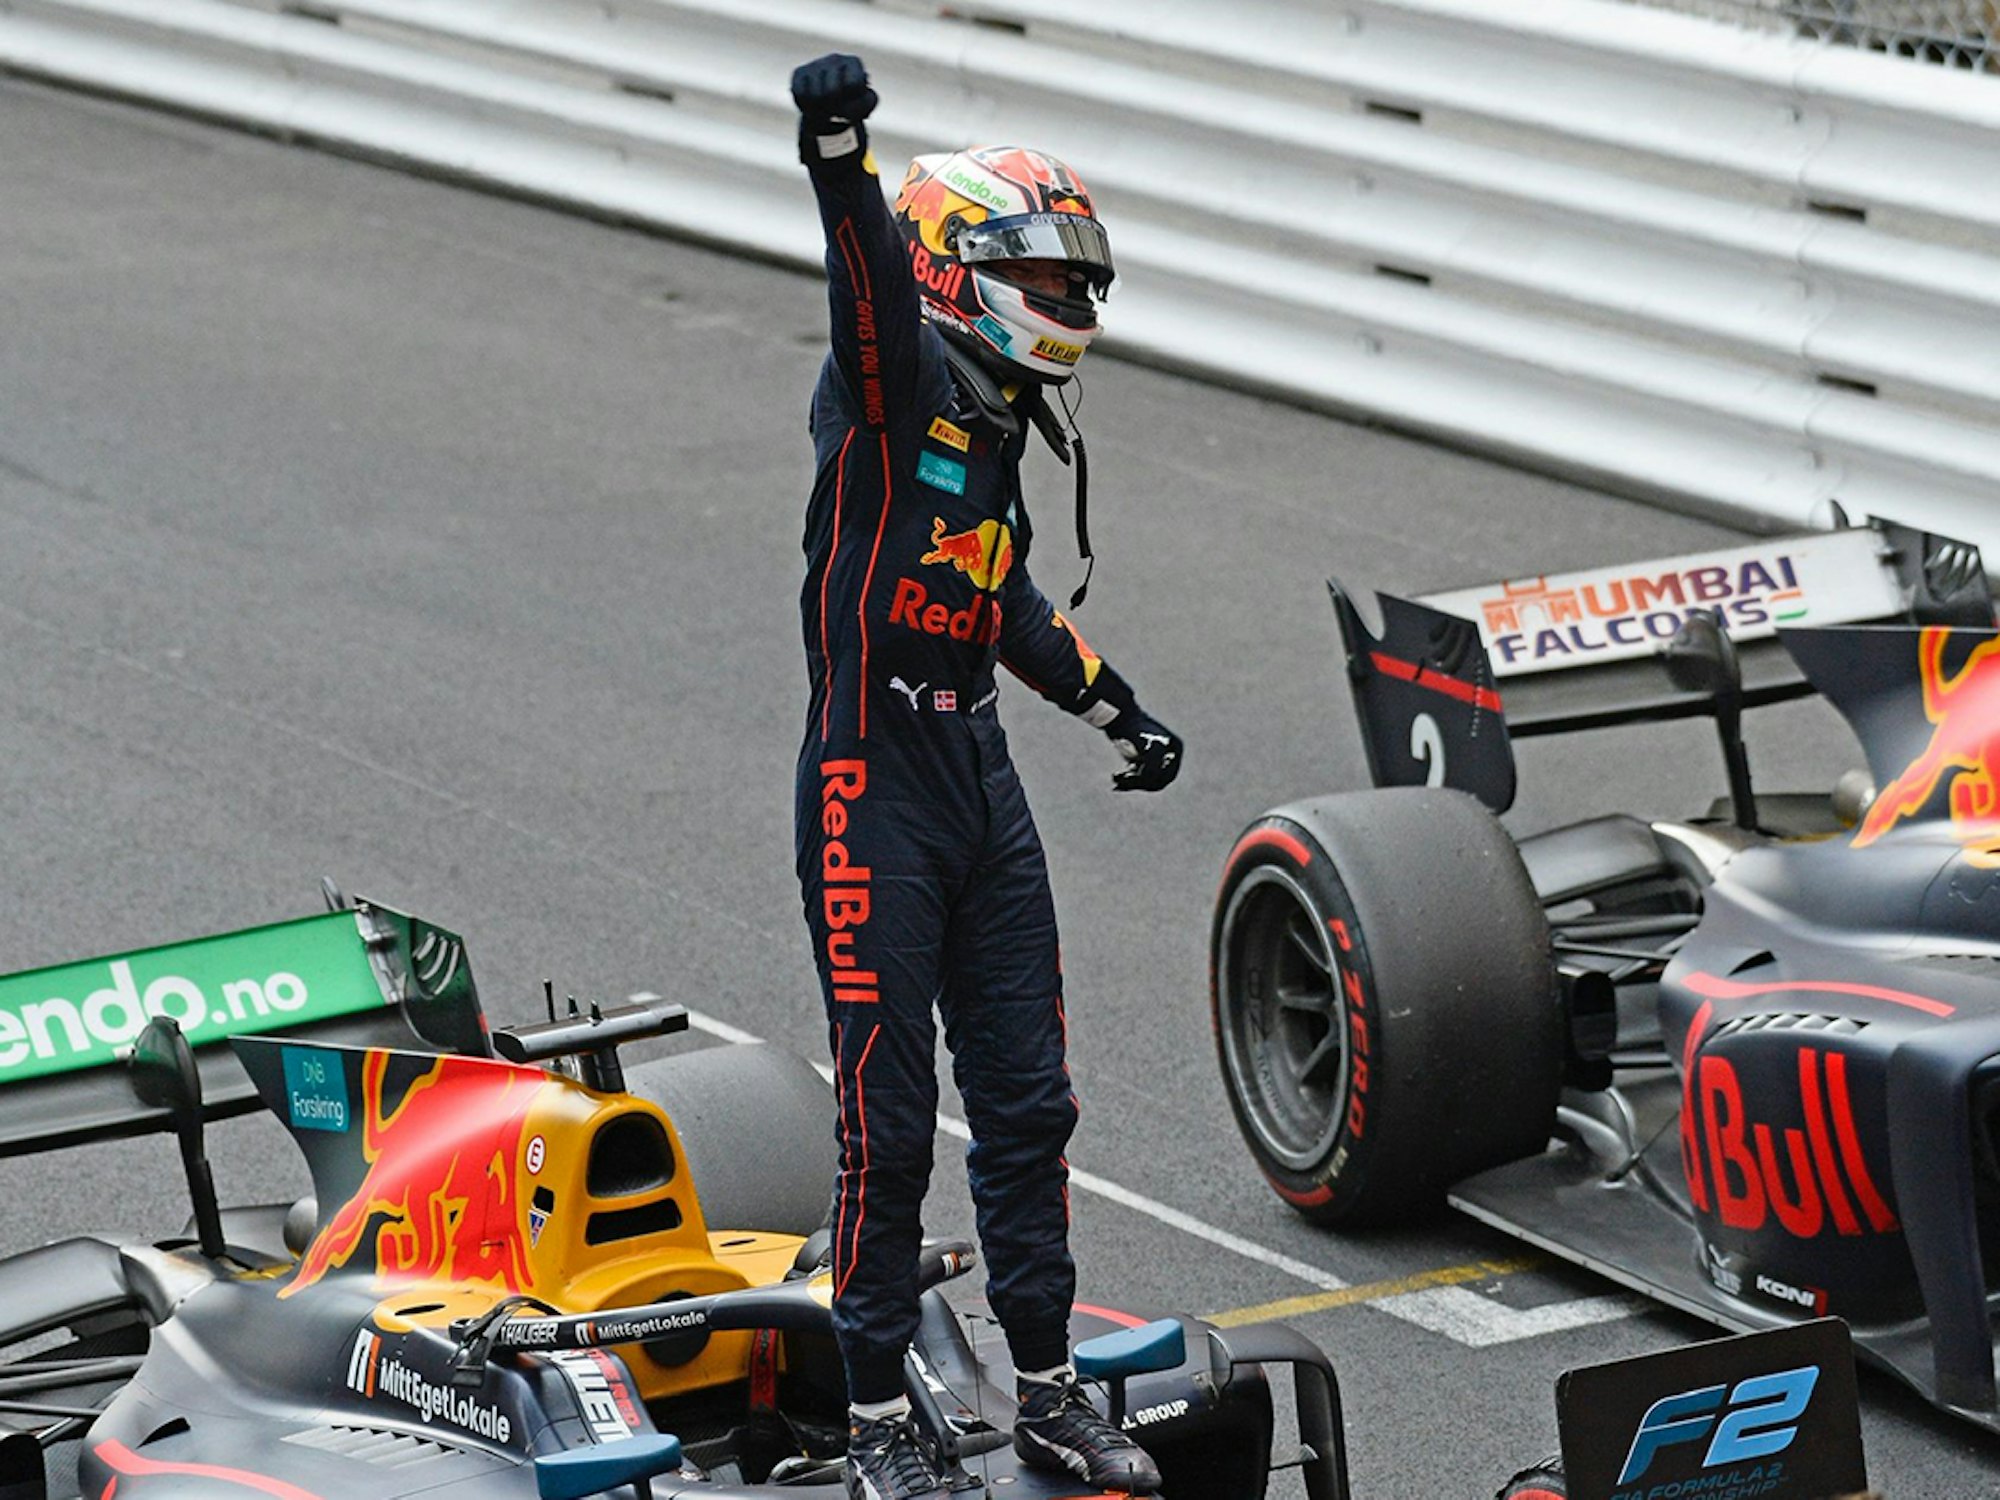 Bilde av Dennis Hauger som har vunnet Formel 2 løp